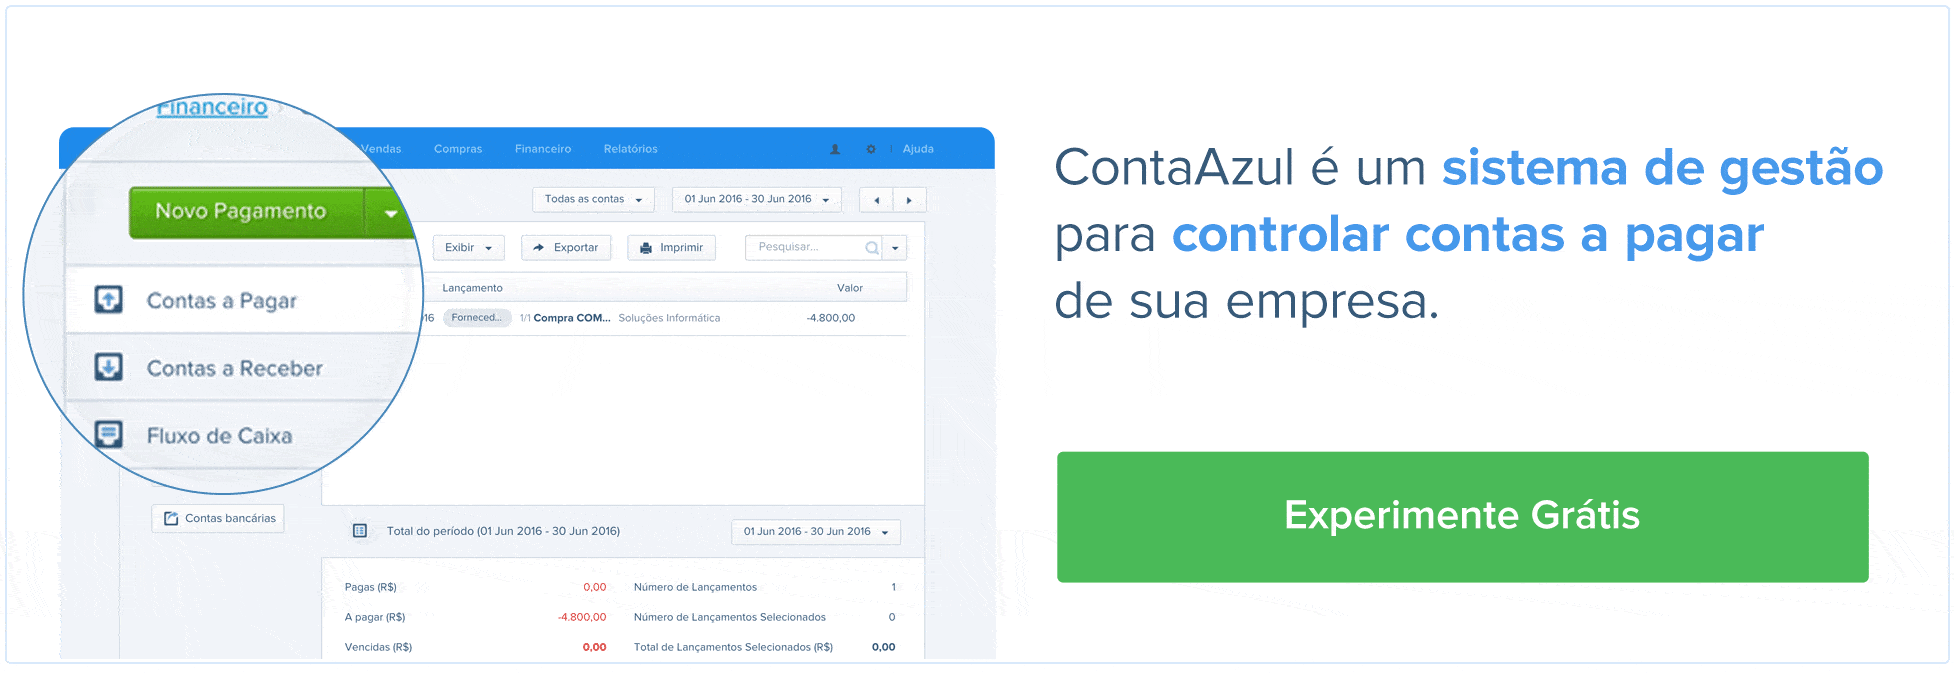 ContaAzul é um sistema de gestão para controlar as contas a pagar de sua empresa